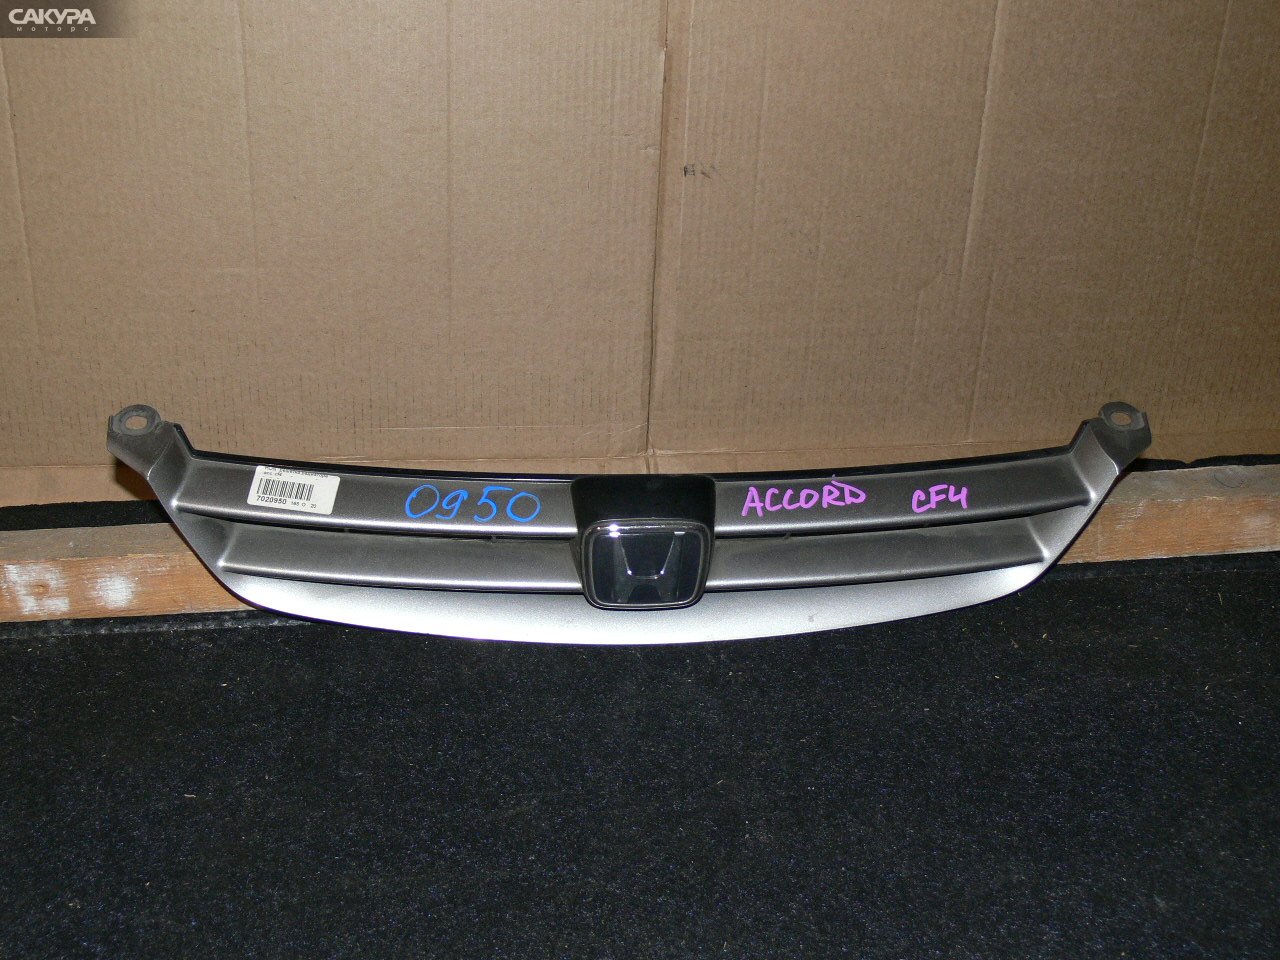 Решетка радиатора Honda Accord CF4: купить в Сакура Иркутск.